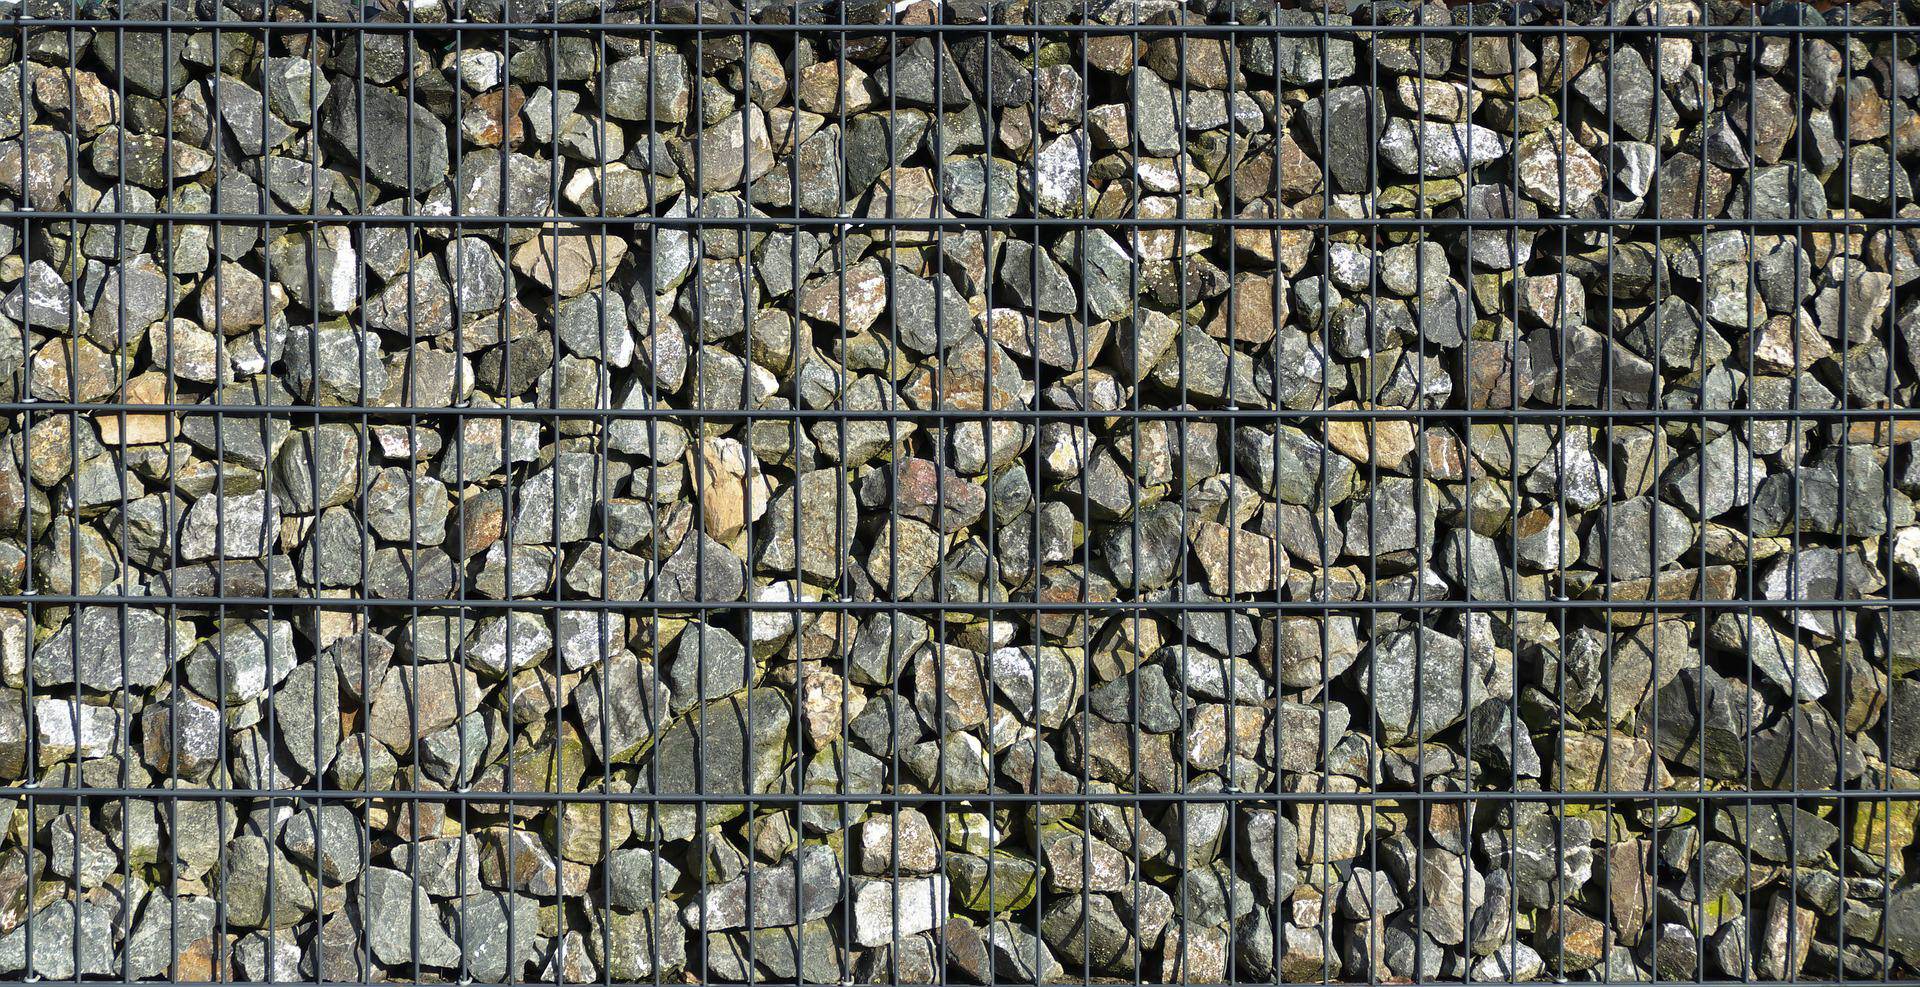  Eine Wand aus Steinen und Schotter. 